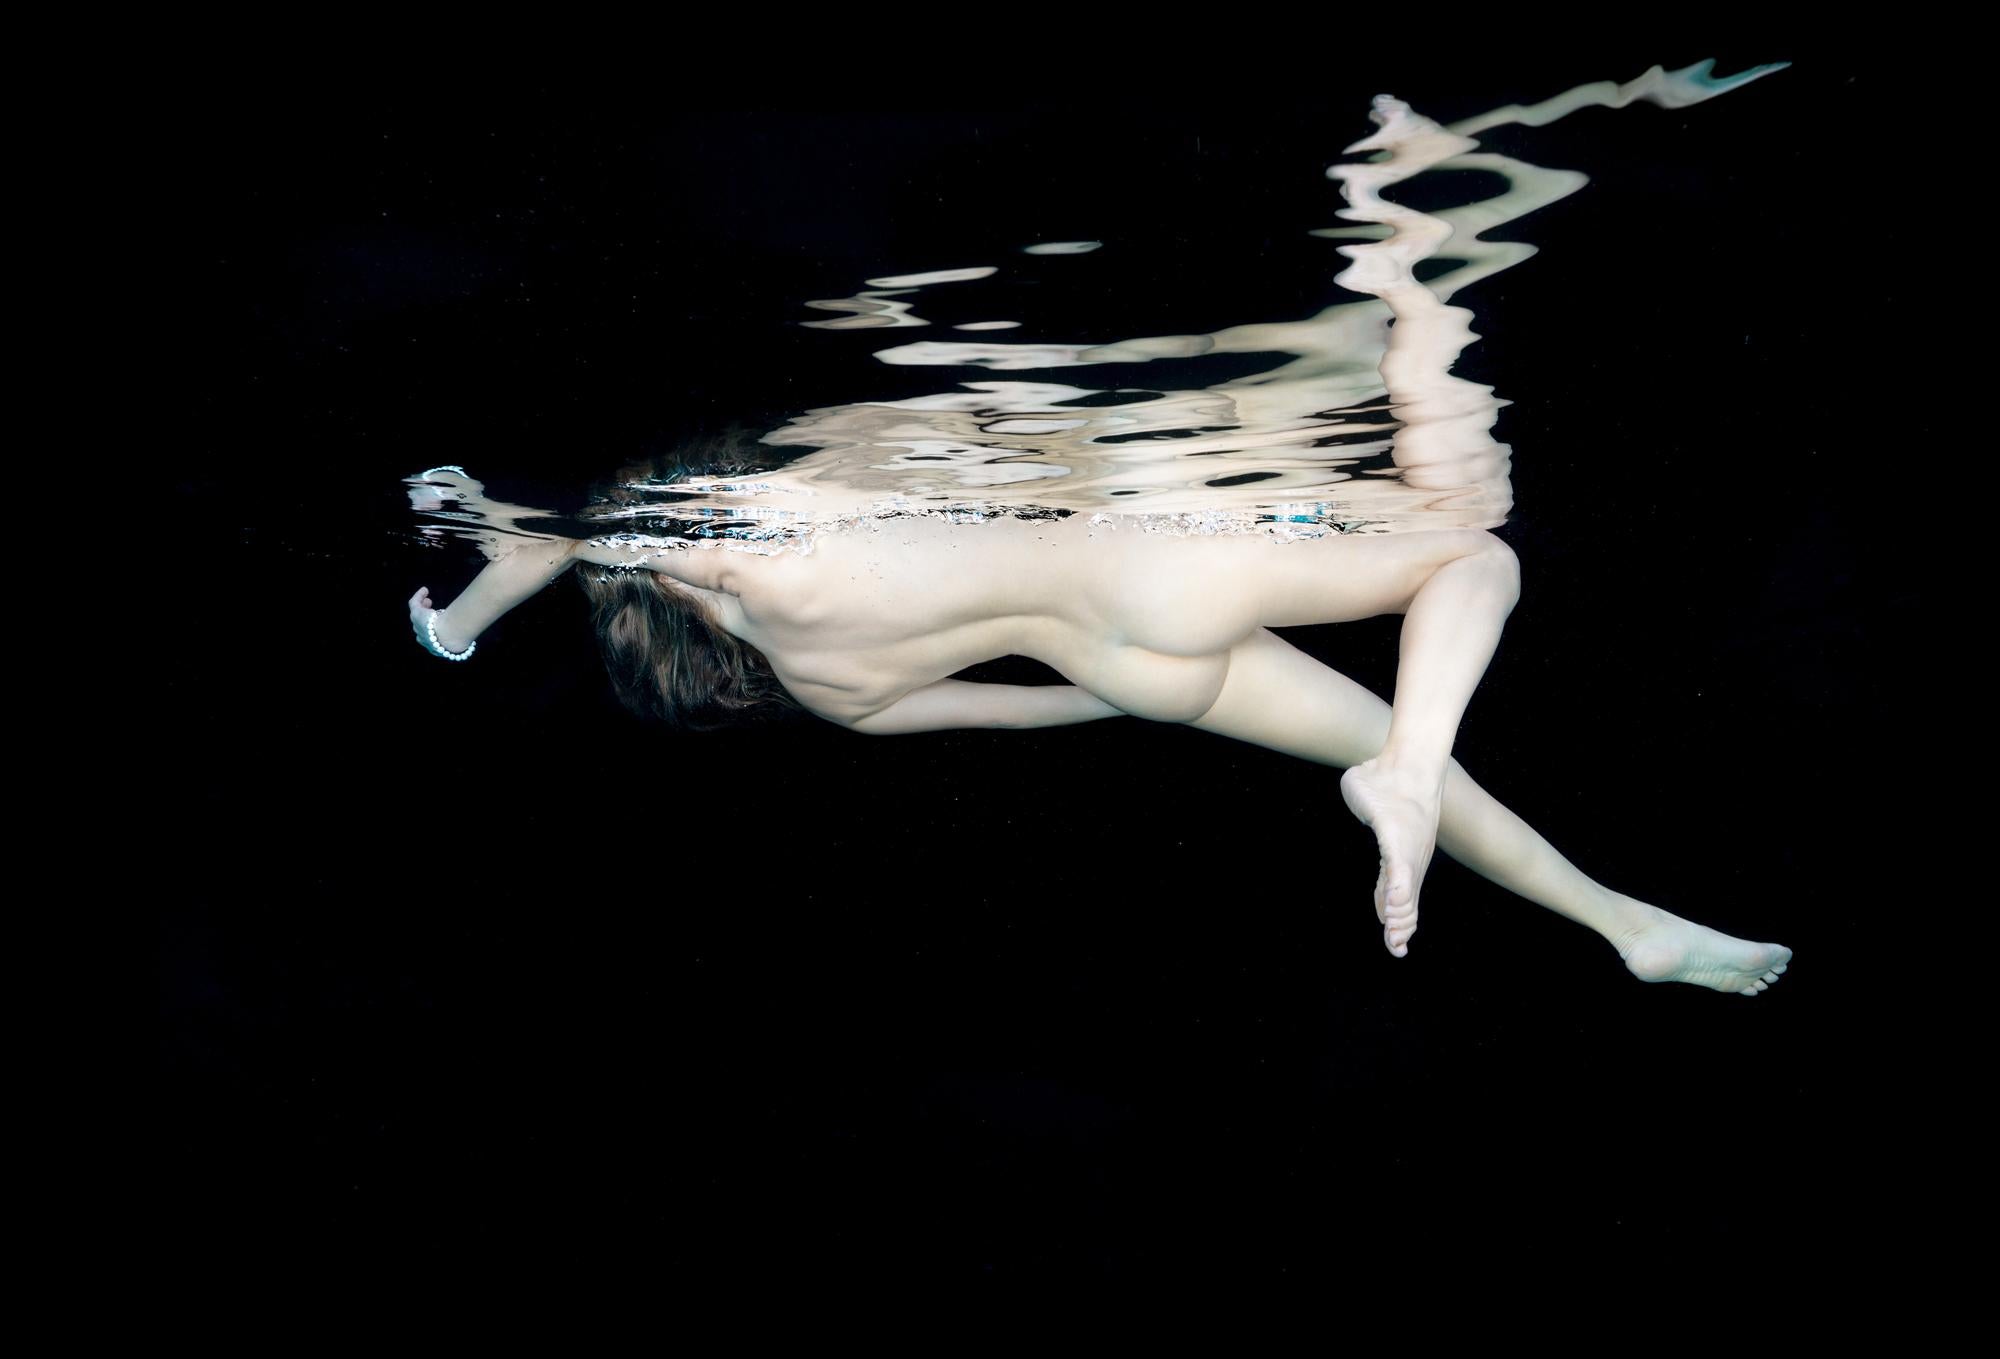 Porcelana II  - fotografía de desnudo subacuático - impresión acrílica 24x36".